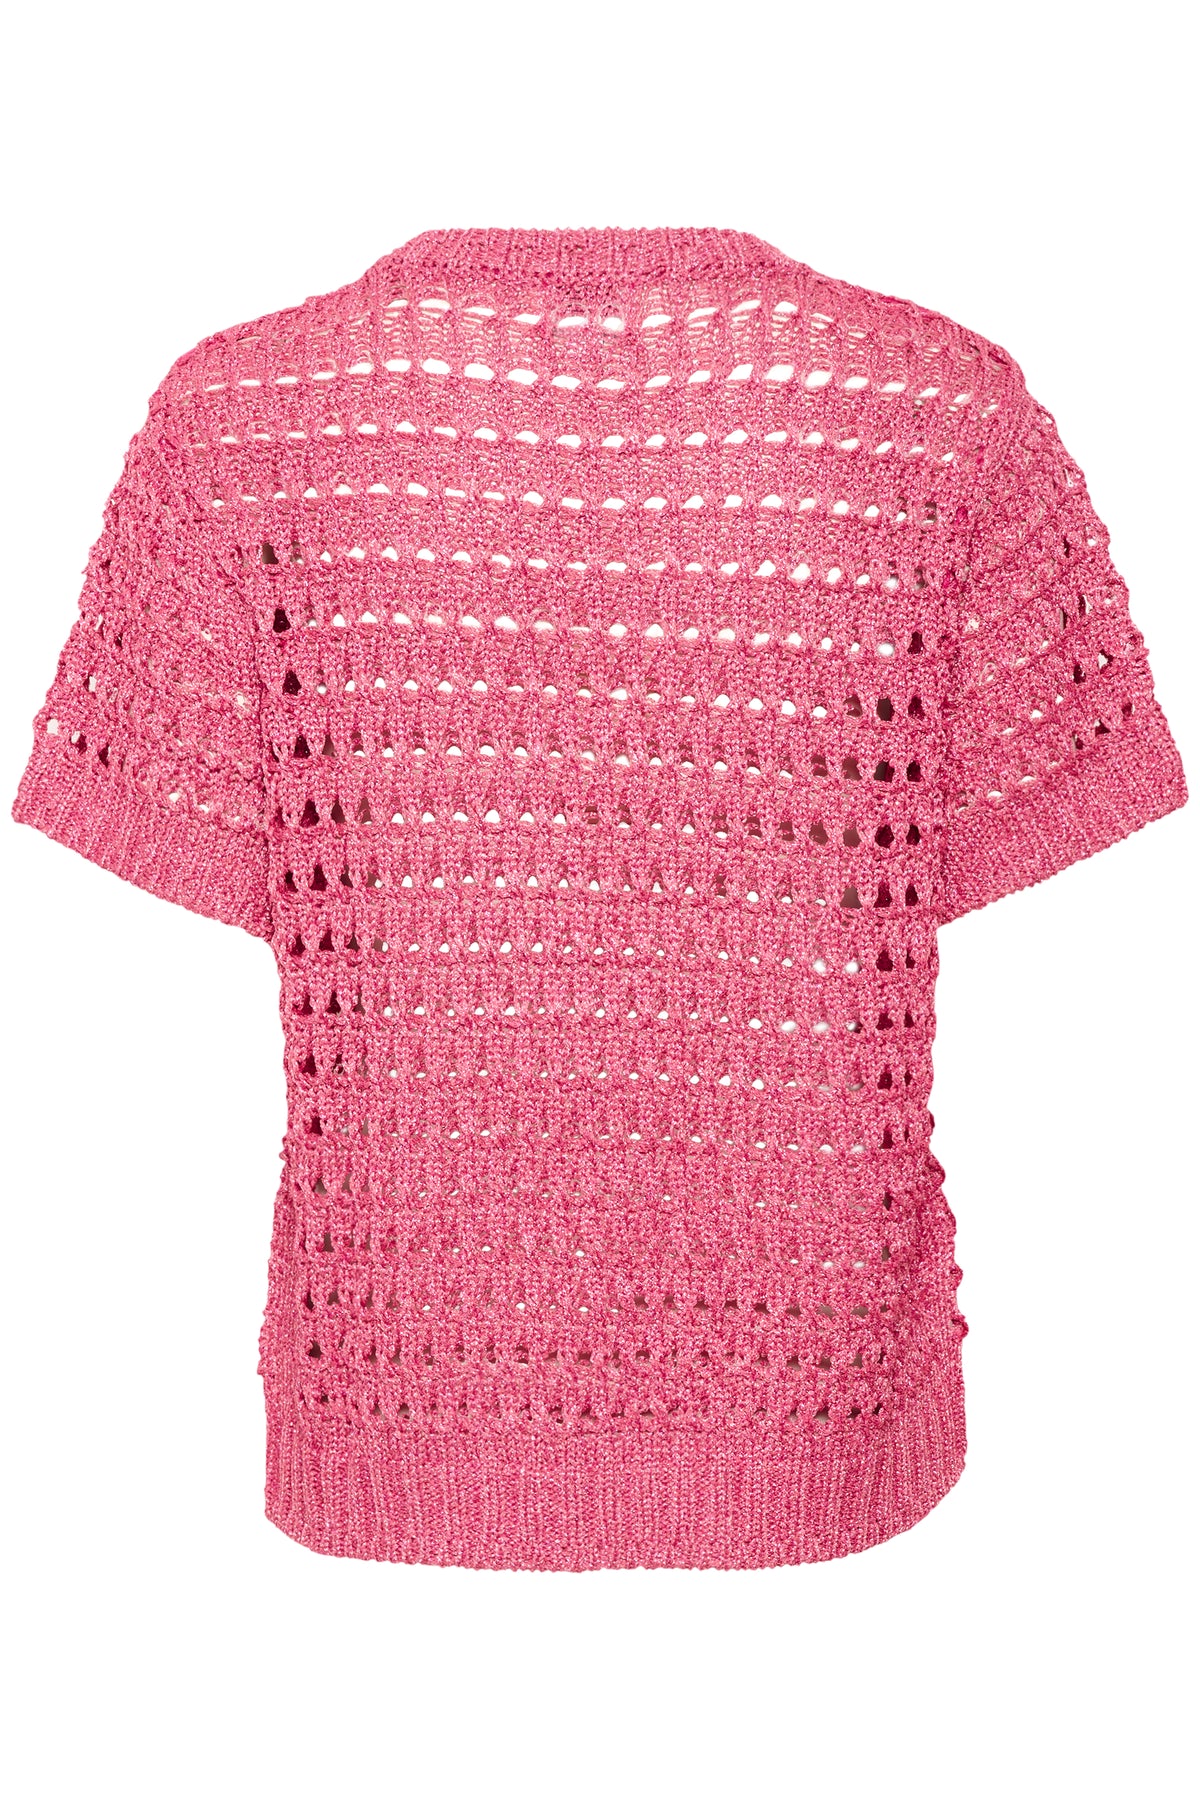 Saint Tropez Essie Pink Cosmo Metallic Knit, 30513278